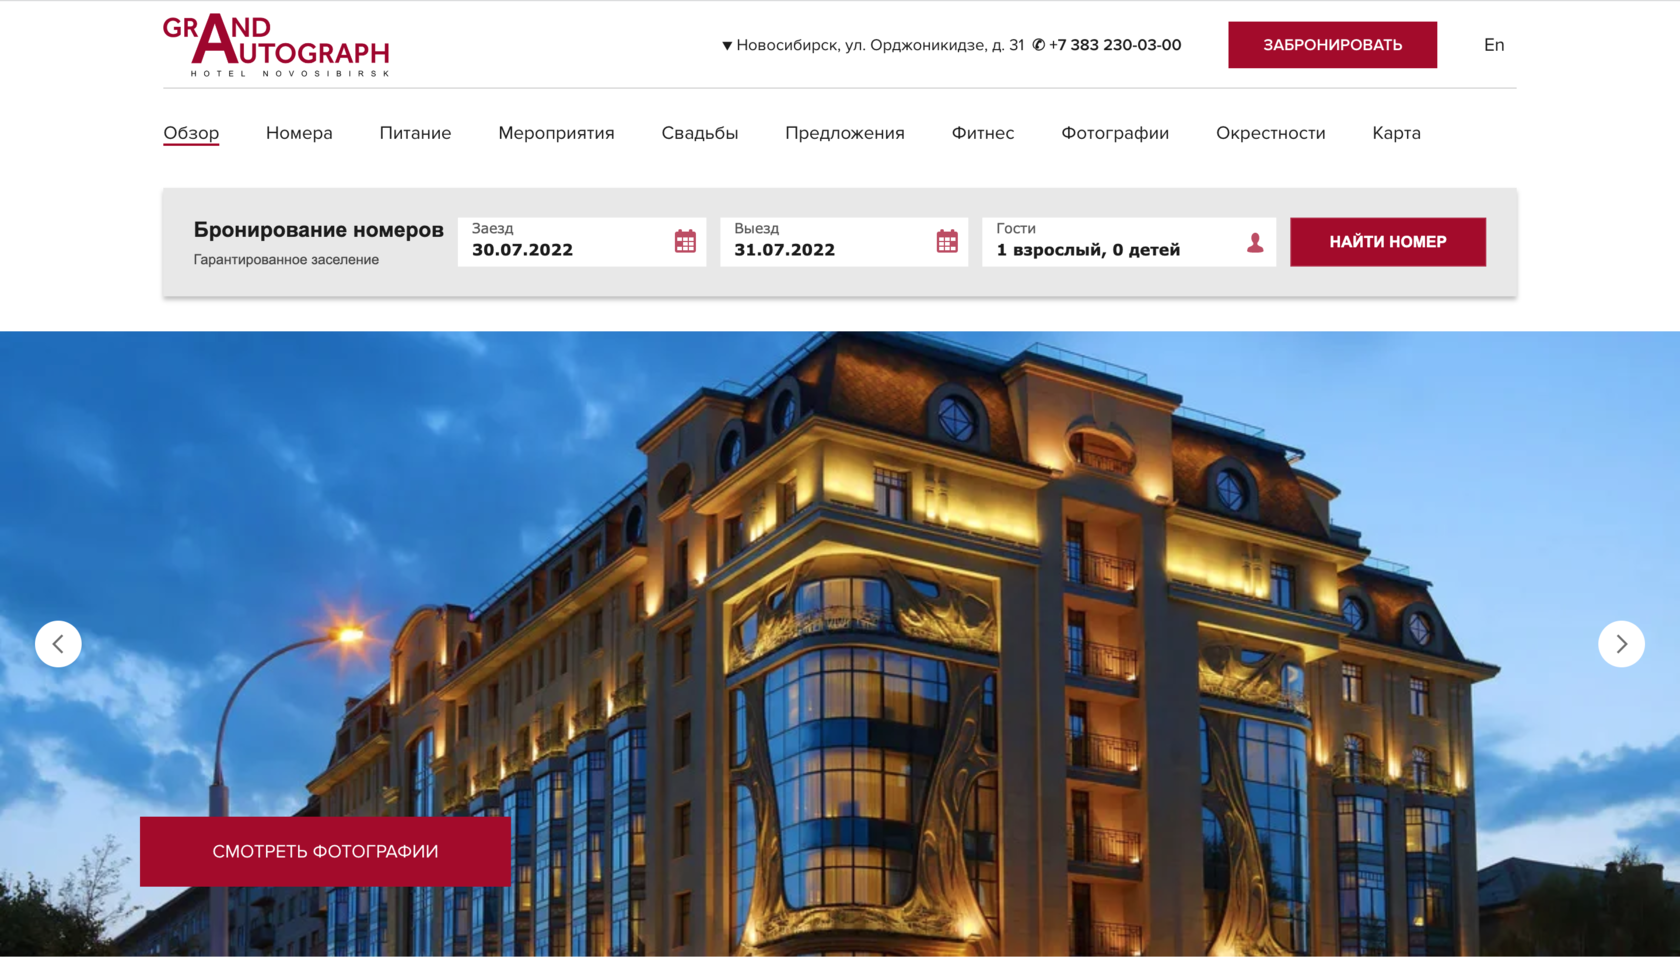 Grand Autograph Hotel Novosibirsk - официальный сайт